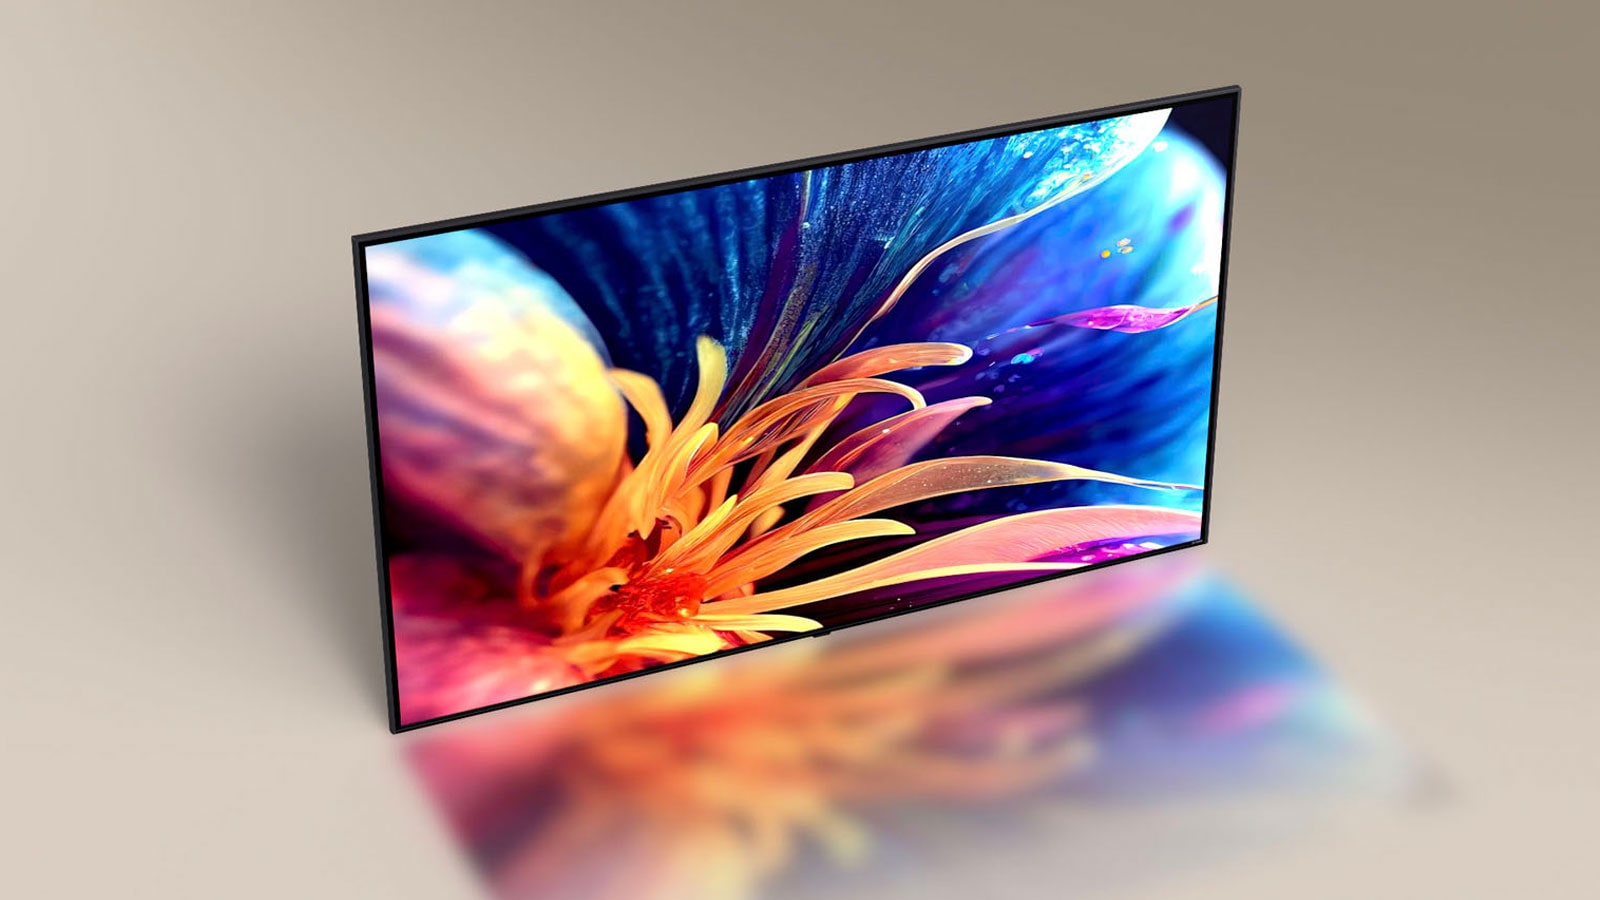 يظهر تلفزيون LG TV فائق النحافة من زاوية علوية. تنزلق زاوية الكاميرا لتظهر الواجهة الأمامية للتلفزيون، وتعرض صورة زهرة ملونة مكبرة.